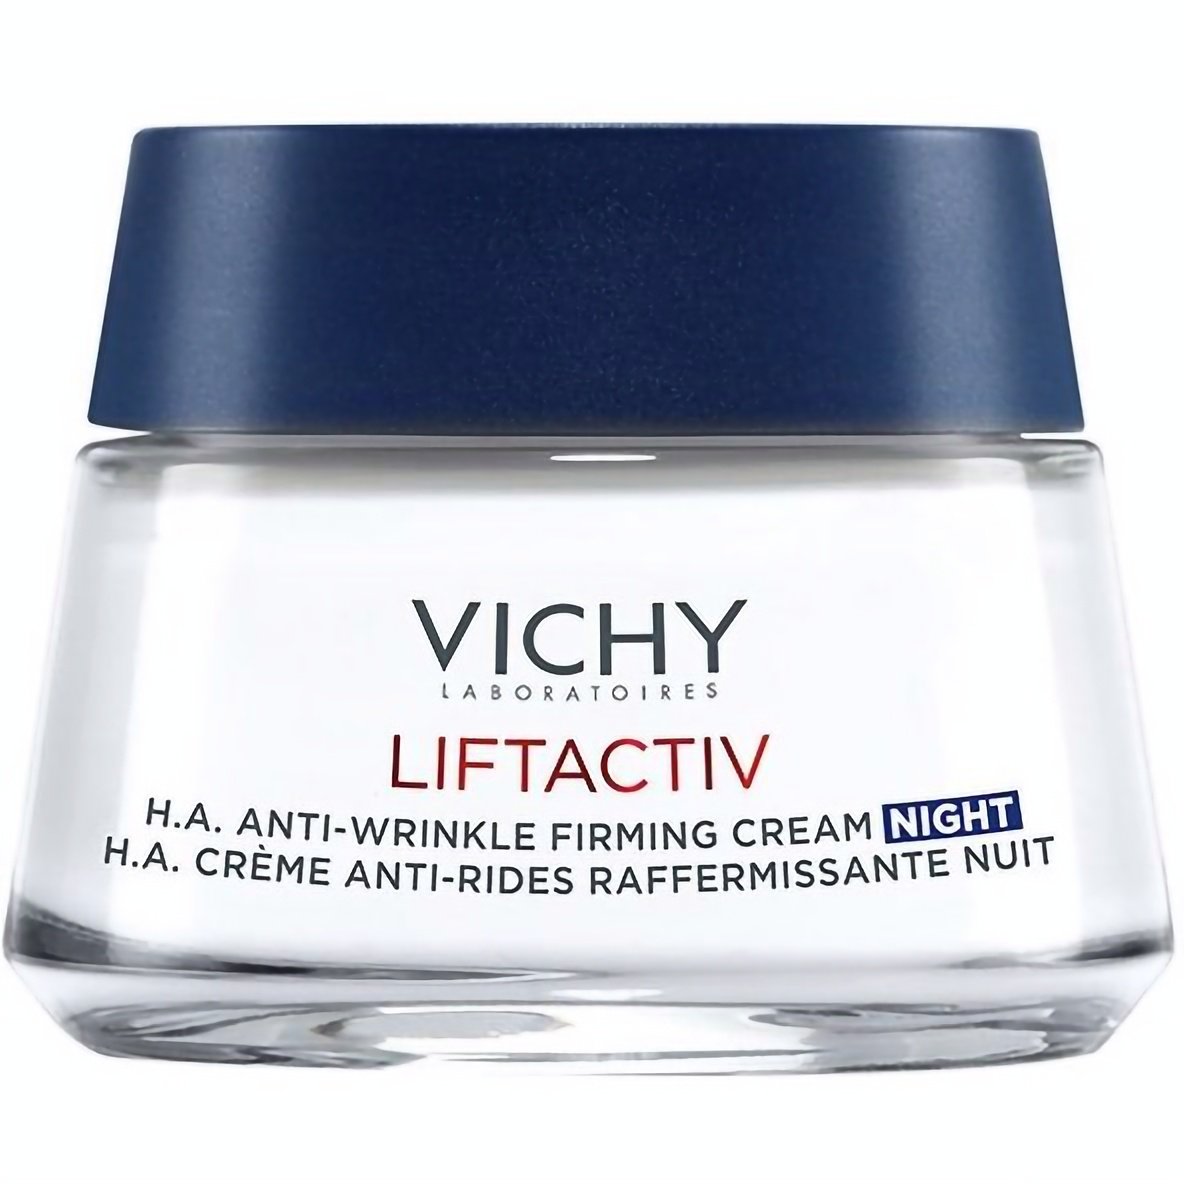 Ночной крем Vichy Liftactiv Supreme, против морщин, 50 мл - фото 2